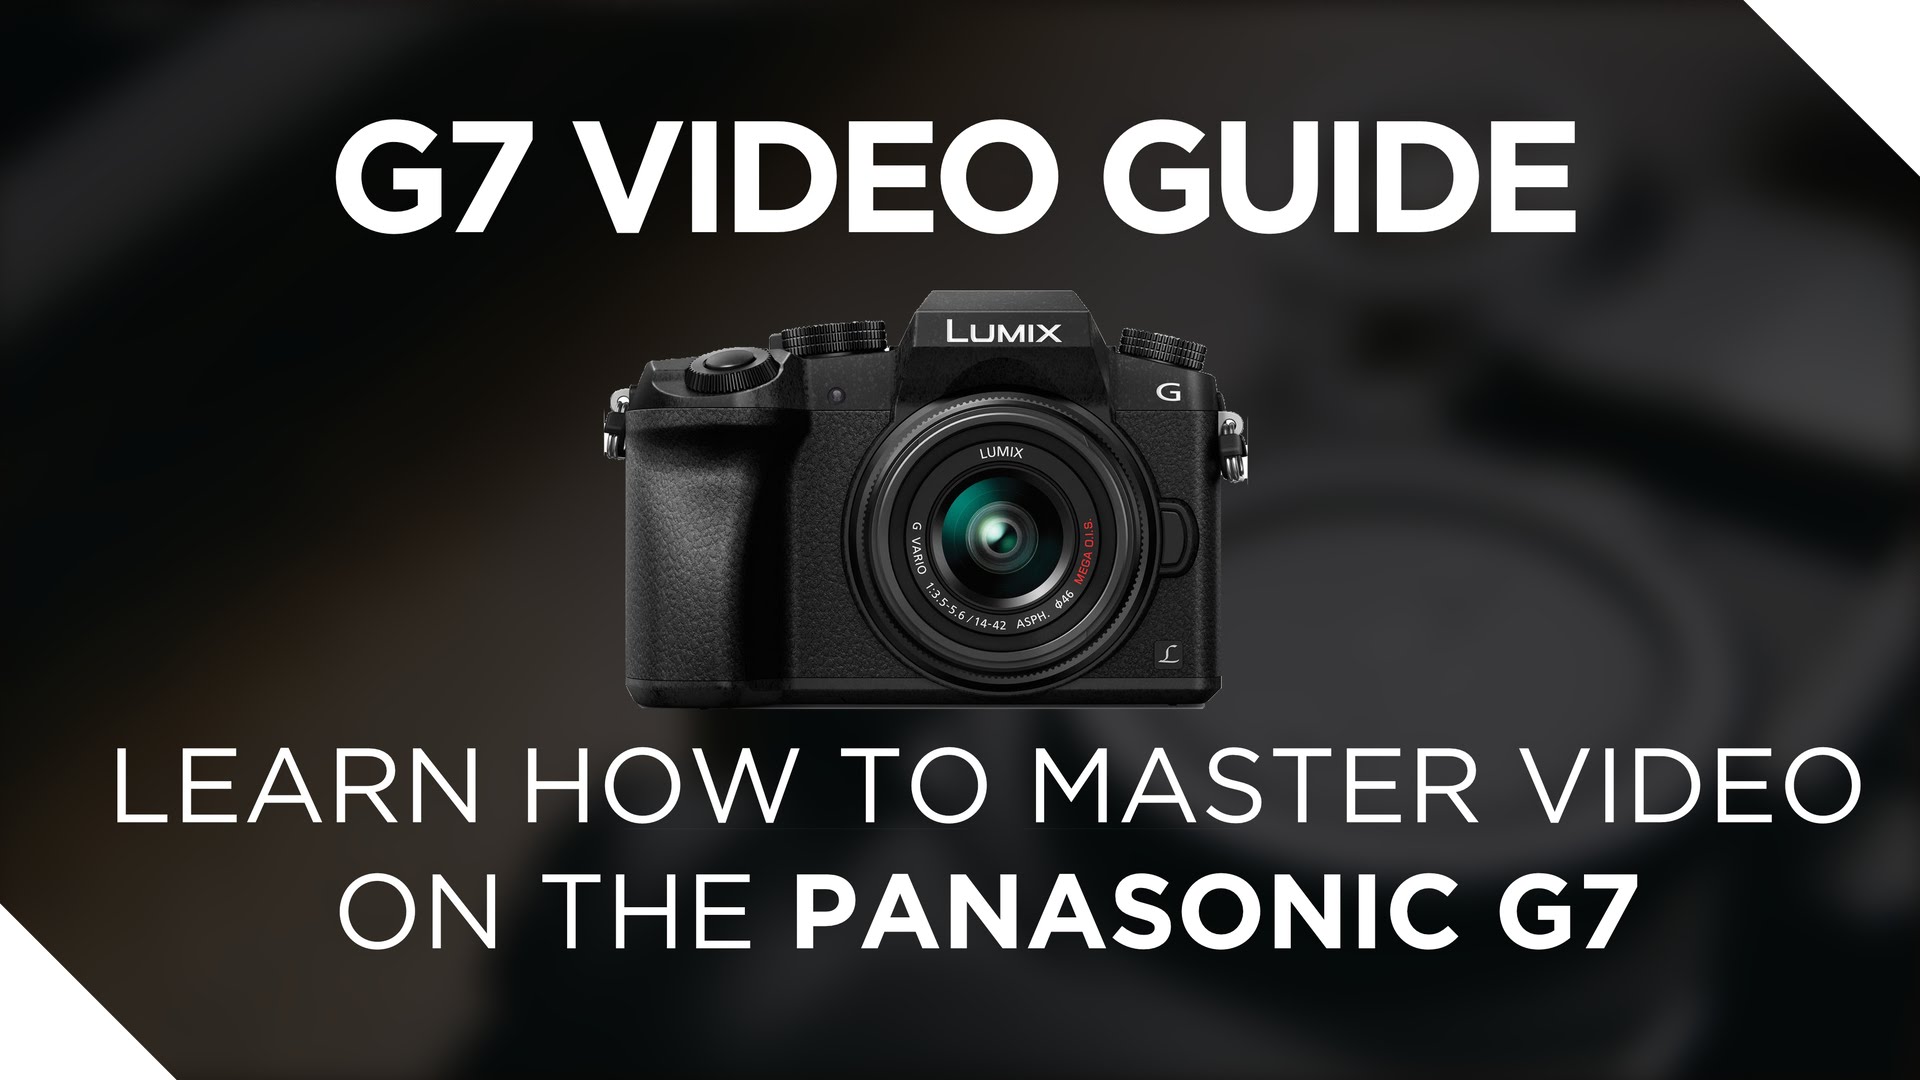 Panasonic G7 Video Guide